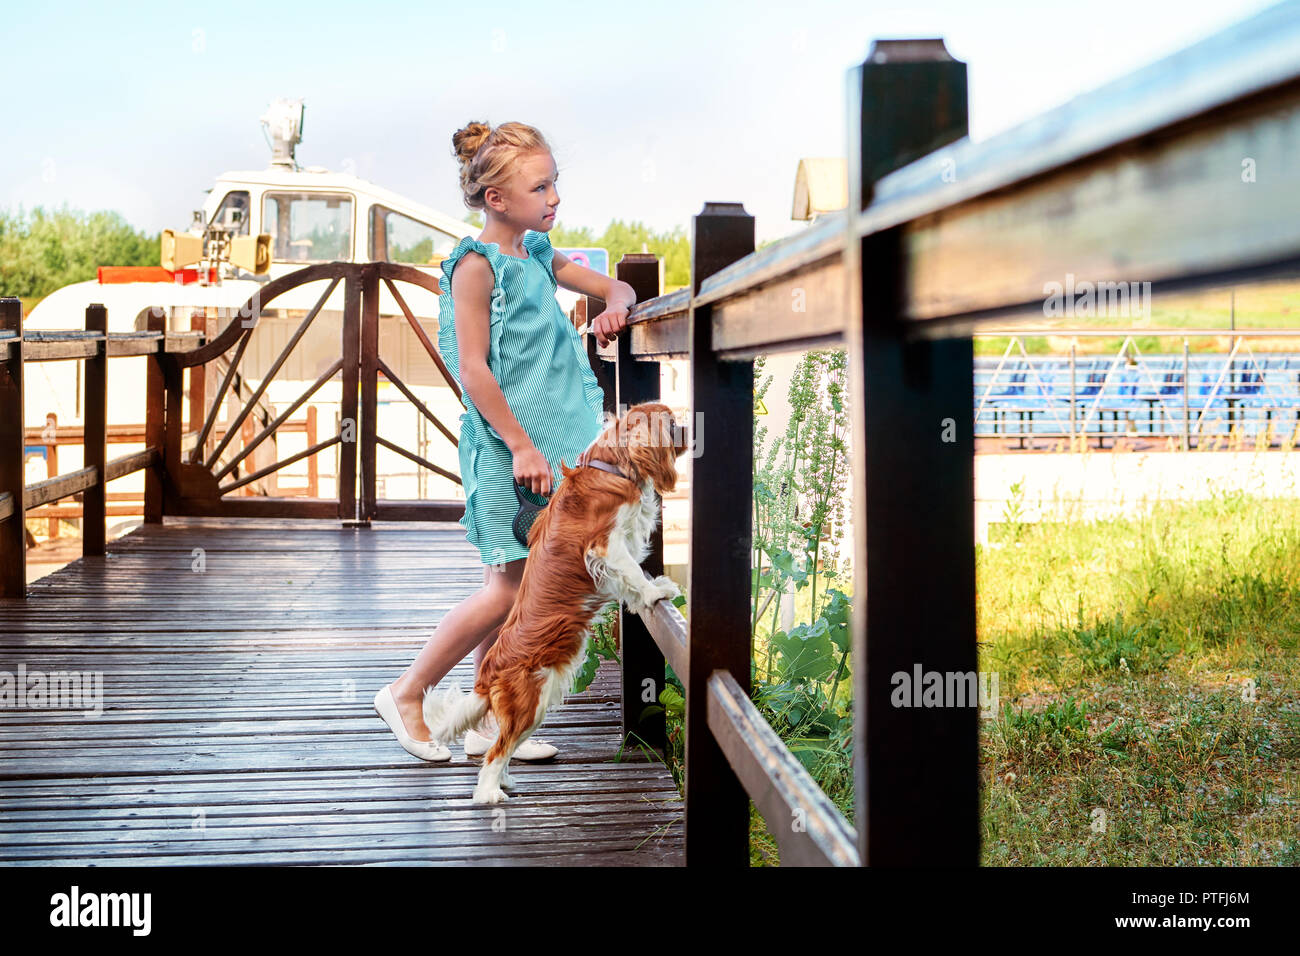 Chica Сhild magra está cerca de puente de madera mirando a otro lado. Cachorro de perro de raza Cocker Spaniel, descansando en las cercanías. Verano, día soleado, por la noche. Foto de stock